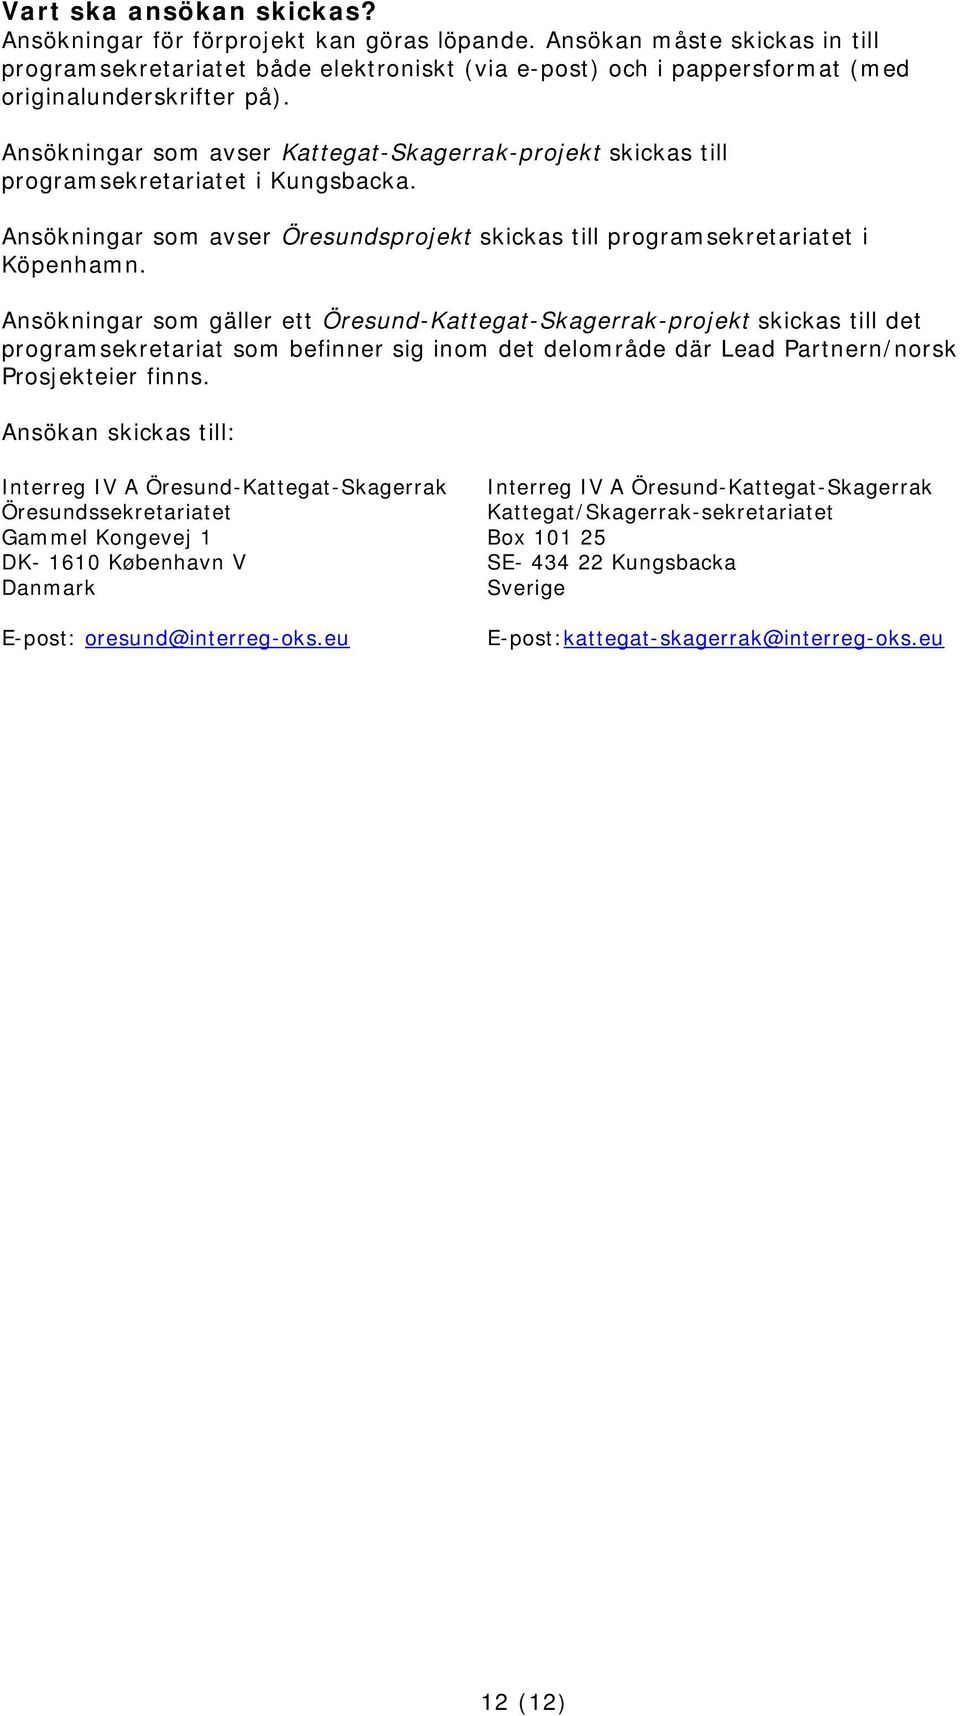 Ansökningar som avser Kattegat-Skagerrak-projekt skickas till programsekretariatet i Kungsbacka. Ansökningar som avser Öresundsprojekt skickas till programsekretariatet i Köpenhamn.